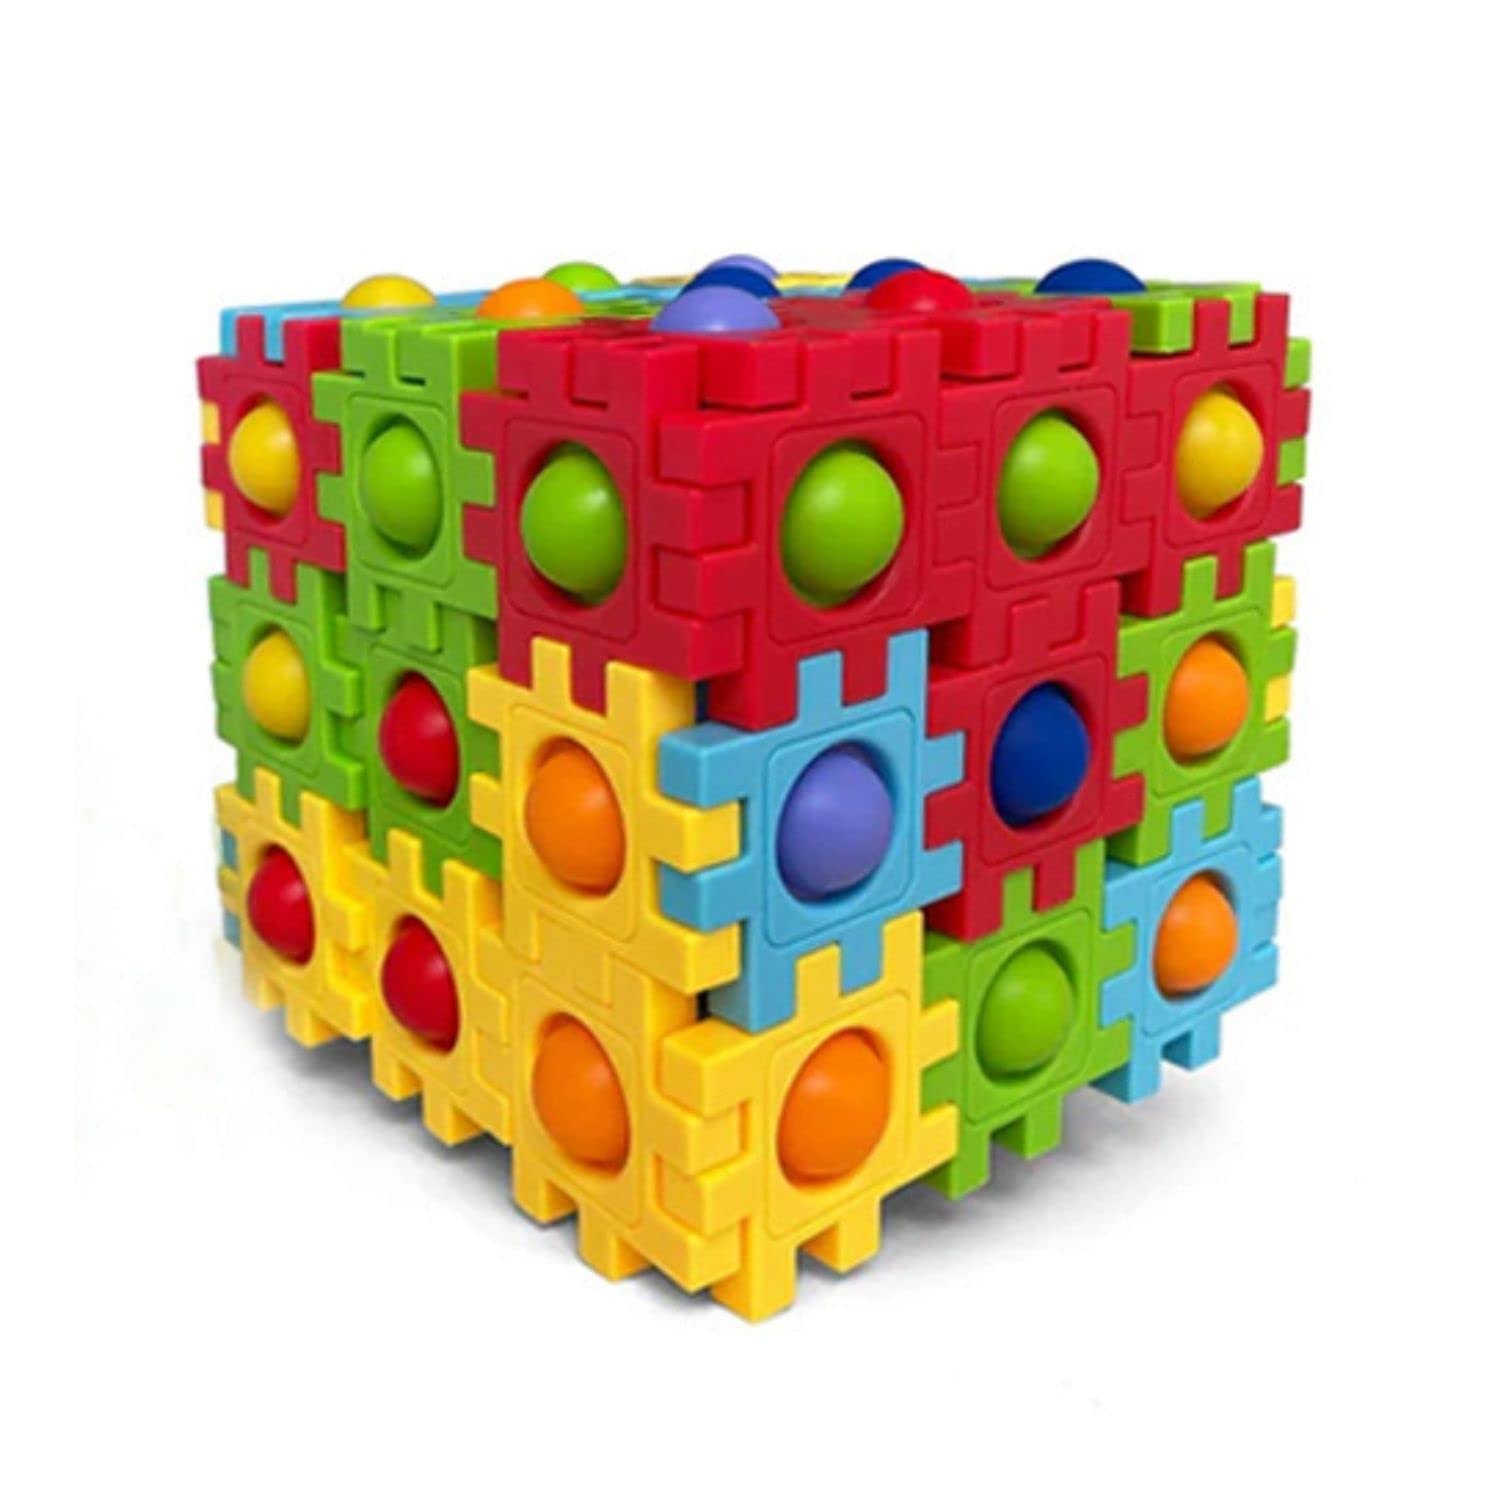 Push Pop-it Puzzle for Building Blocks